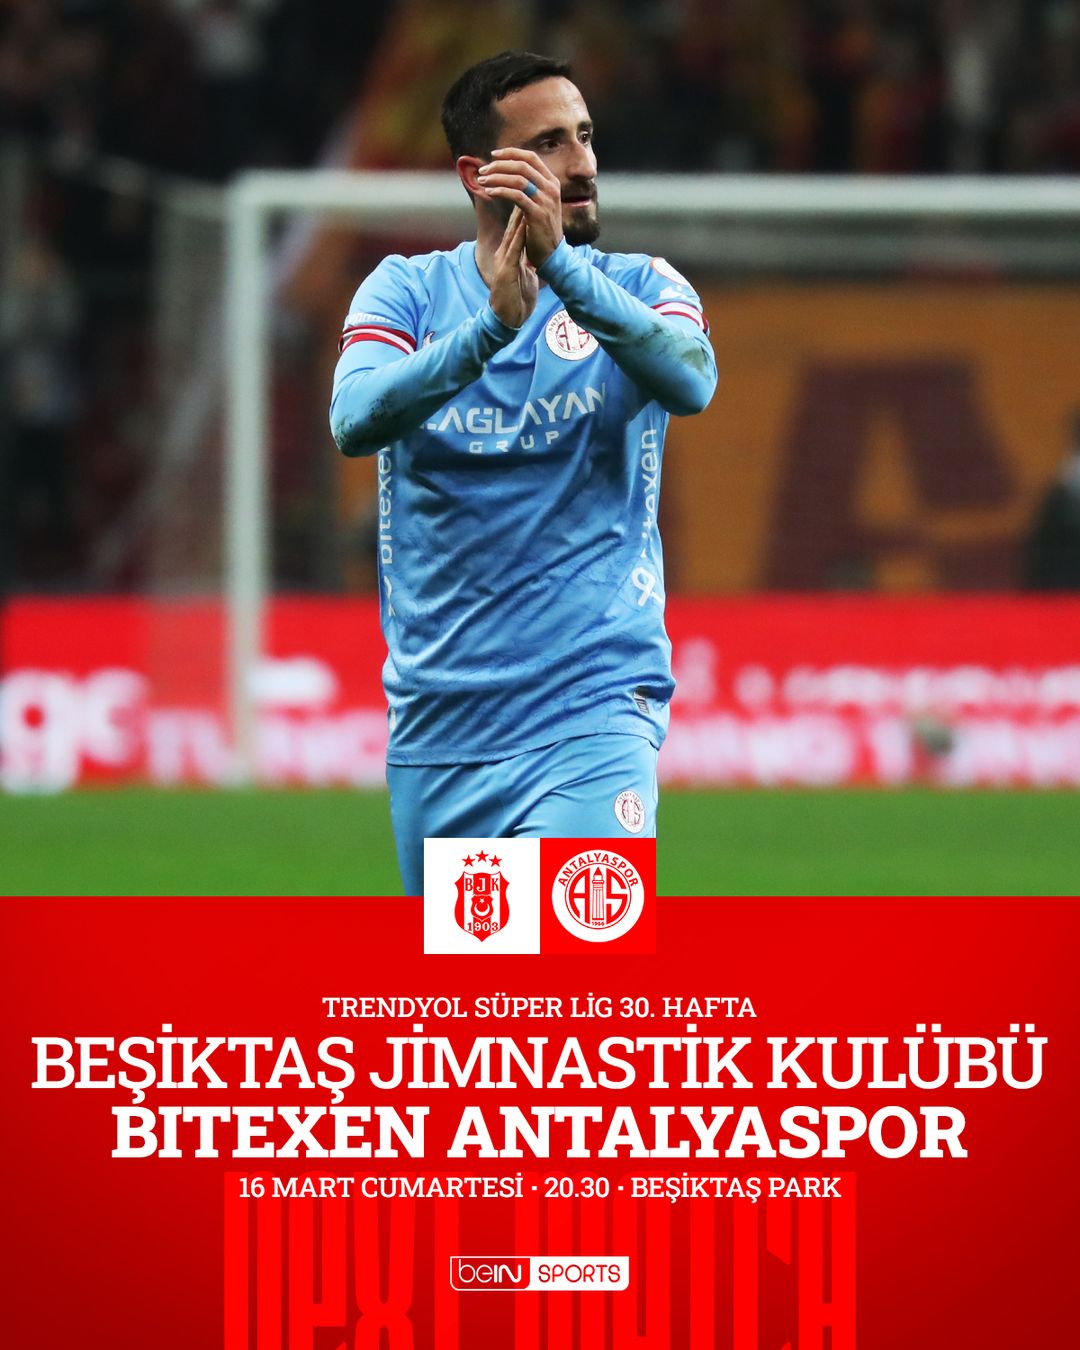 Antalyaspor-Beşiktaş Süper Lig maçı 16 Mart'ta